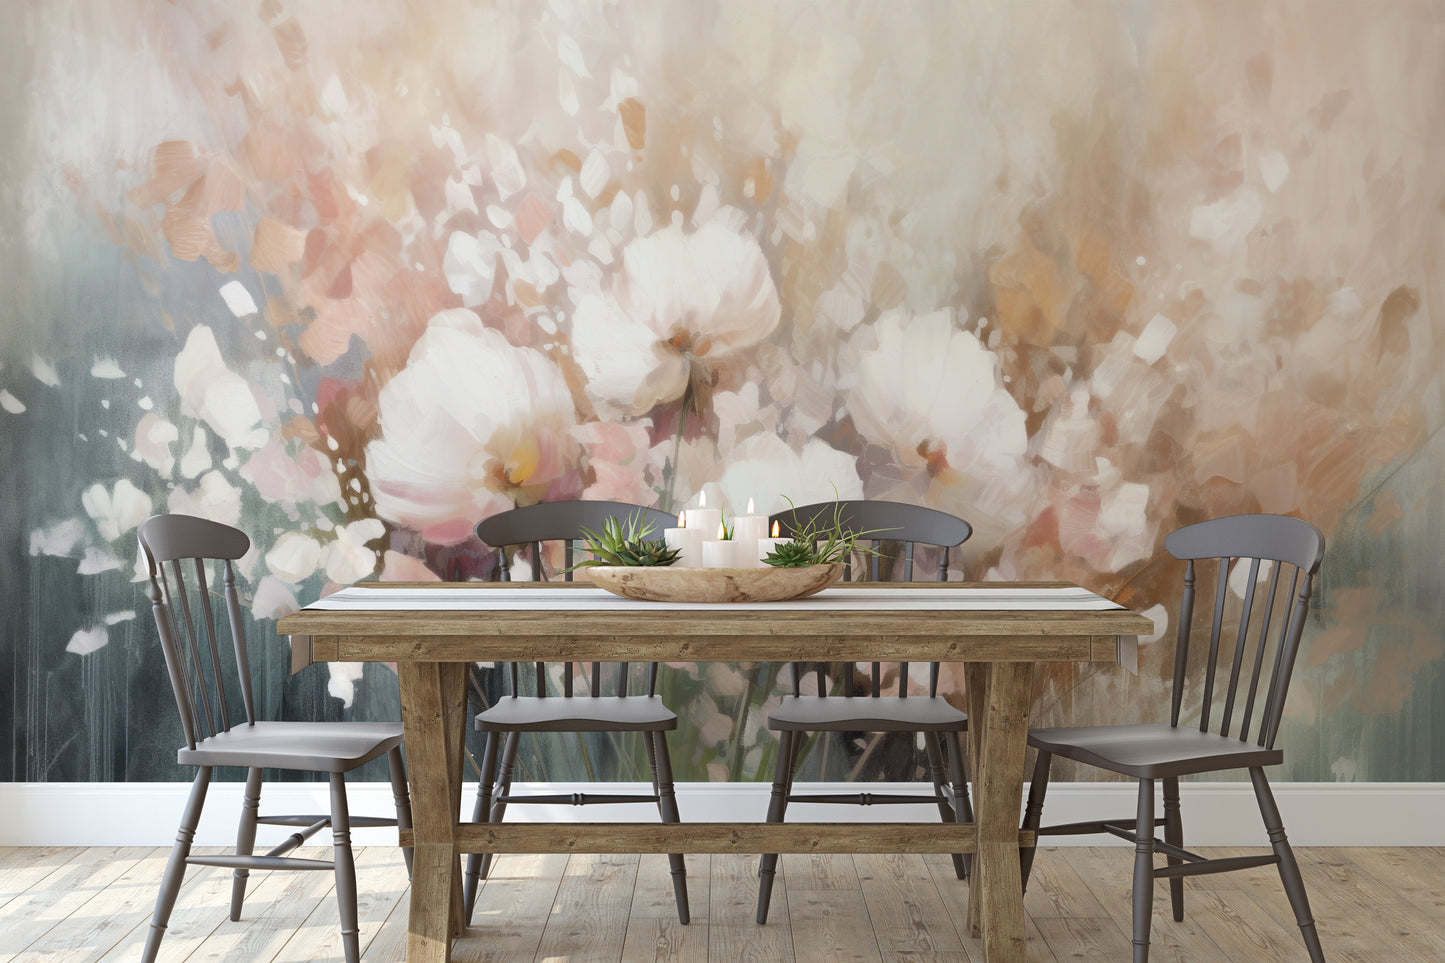 Fototapeta malowana o nazwie Misty Blossom Drift pokazana w aranżacji wnętrza.